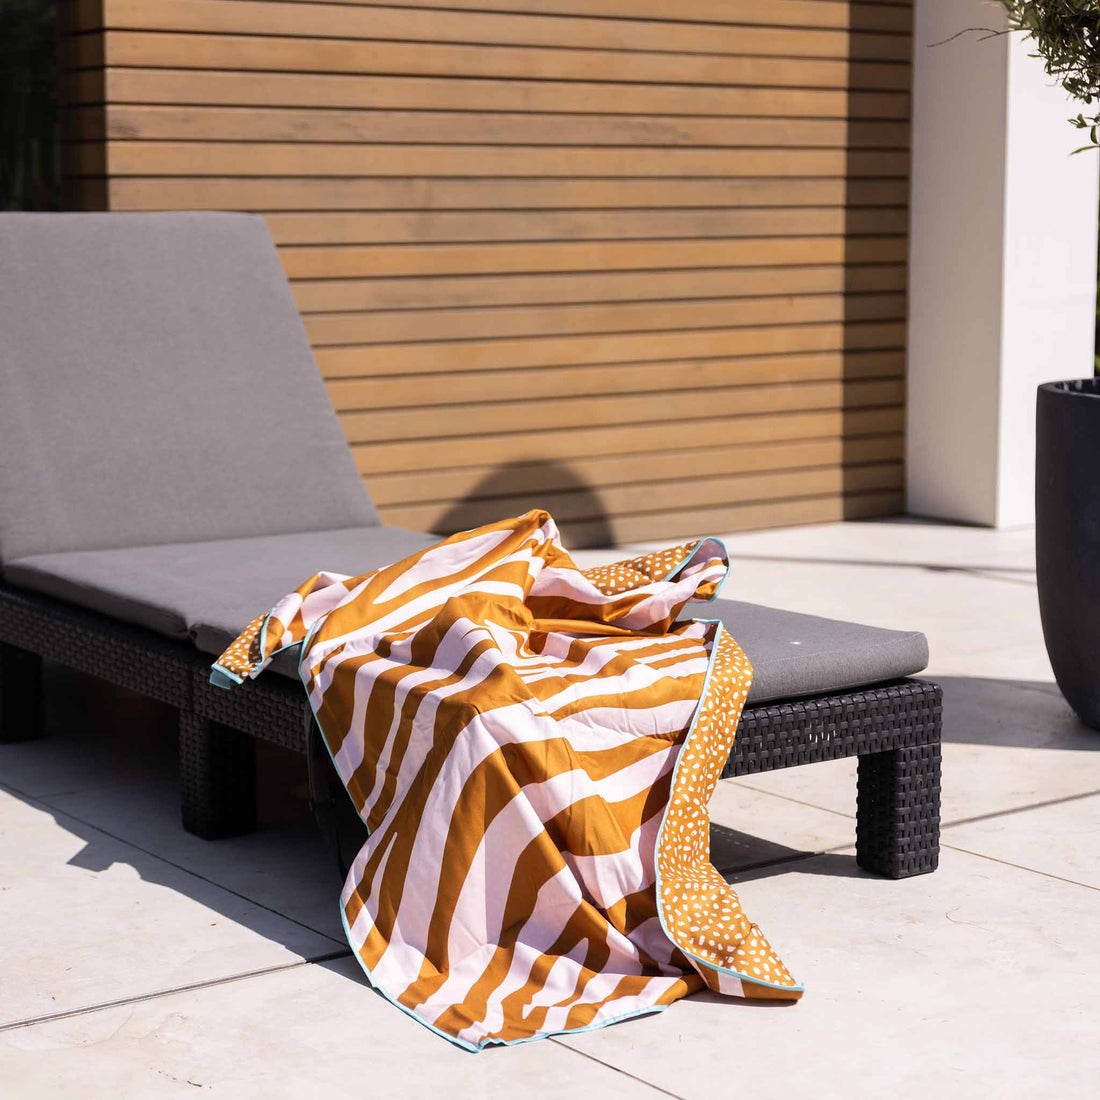 Microvezel Handdoek Oranje Zebra 135 x 65 cm